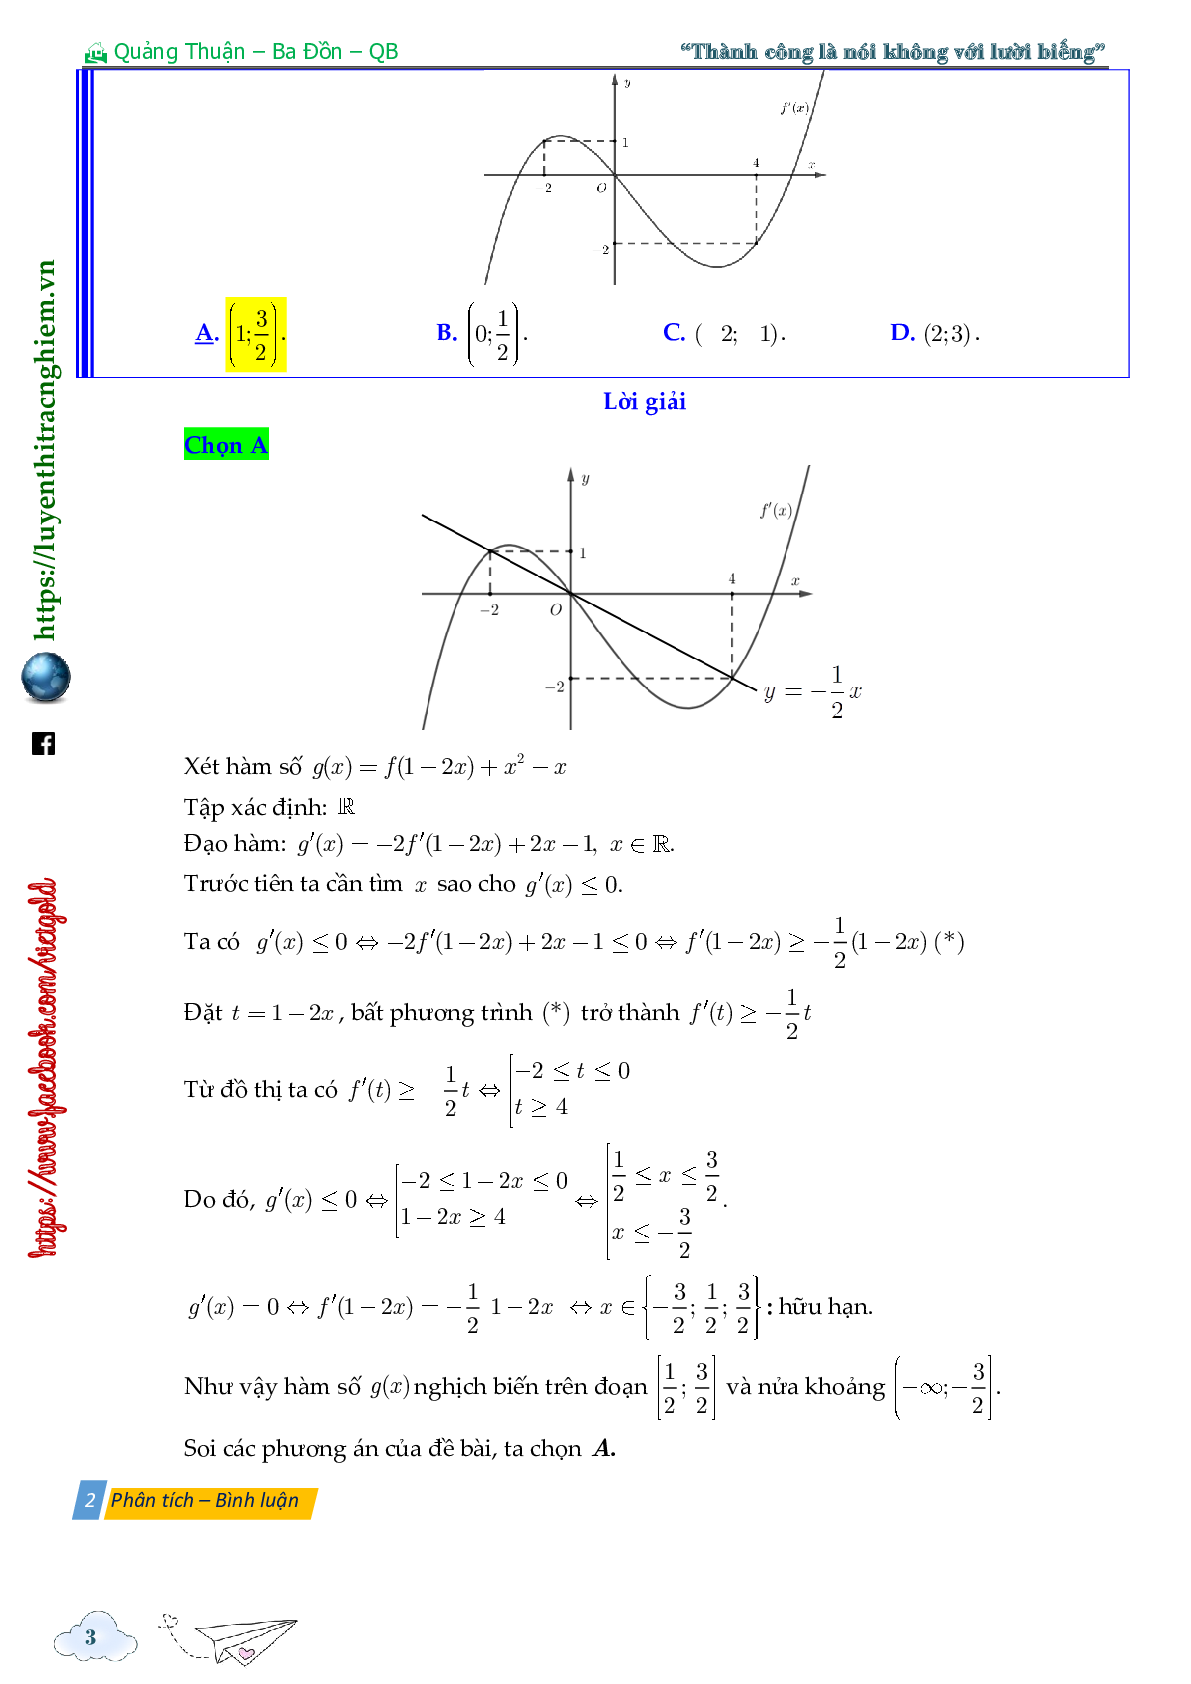 Tính đơn điệu của hàm ẩn cho bởi đồ thị hàm f'(x) (trang 3)